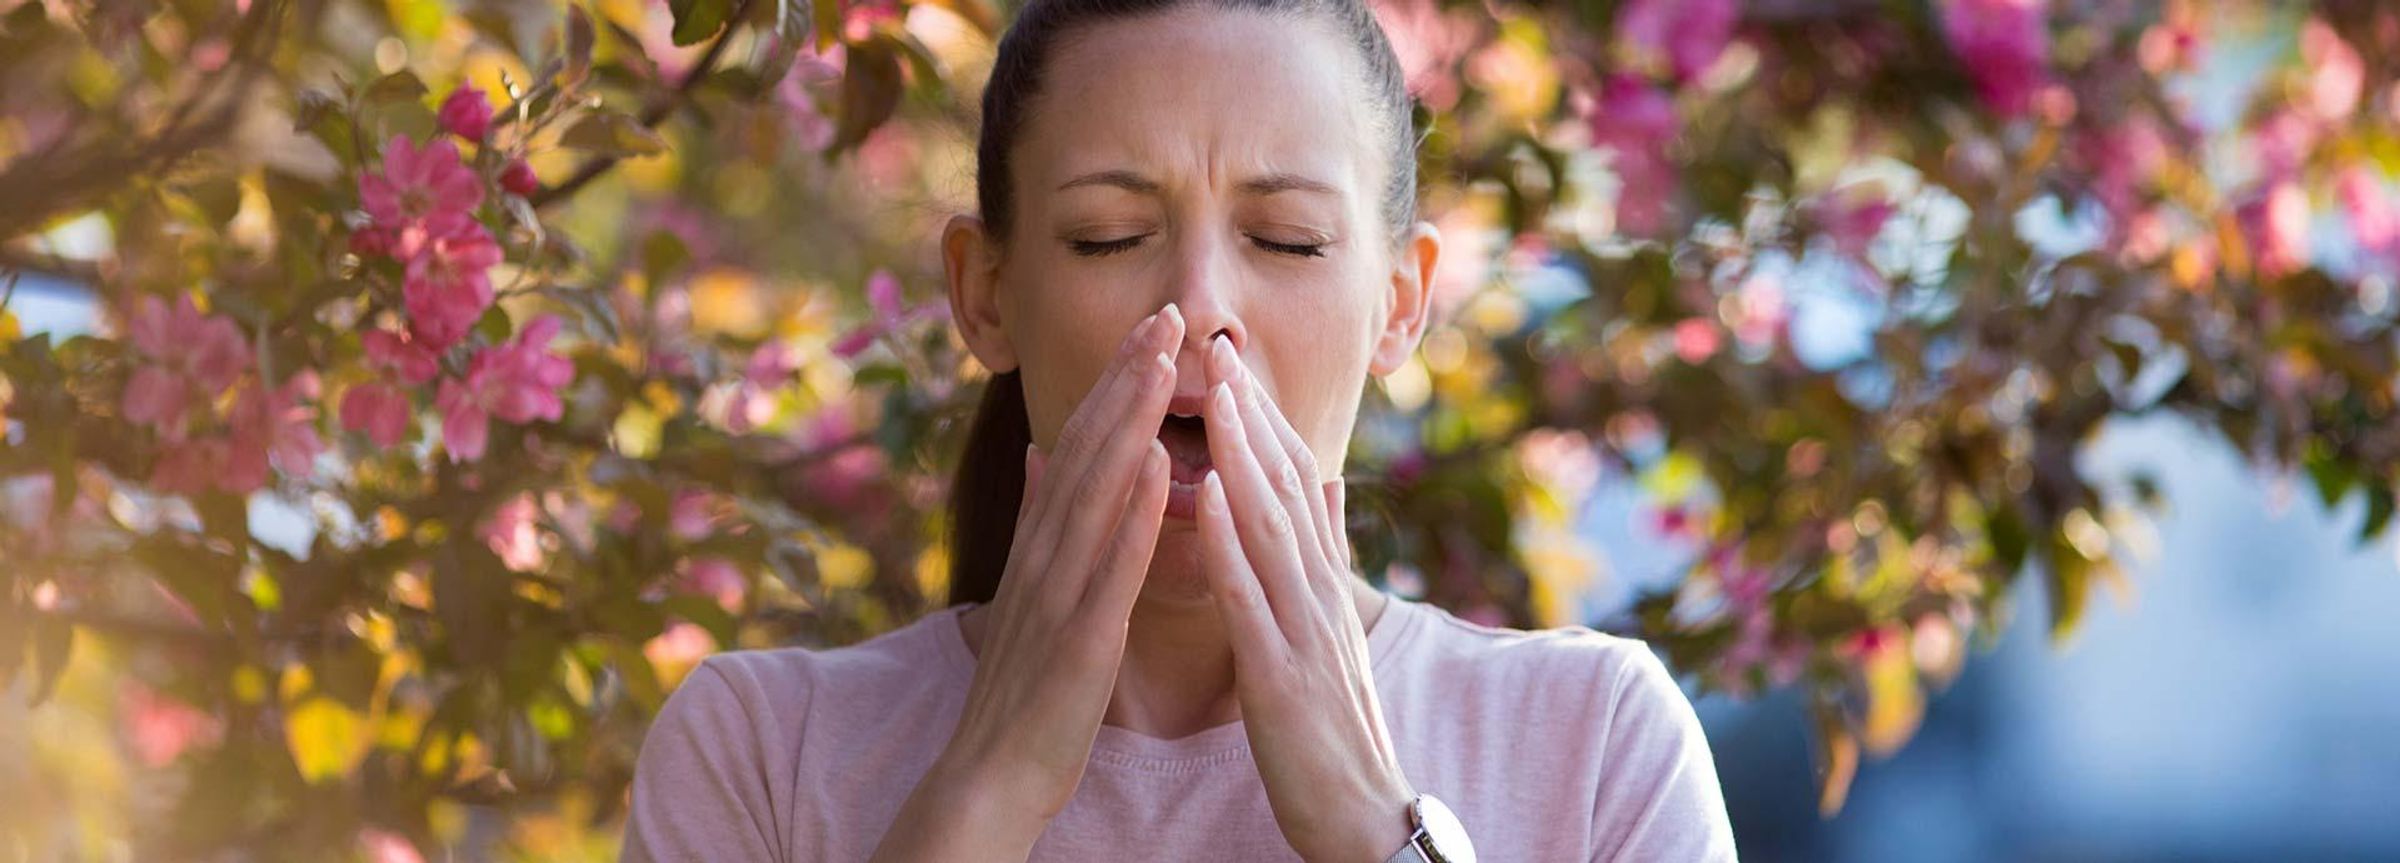 Allergien nehmen zu – schnelle Hilfe ist gefragt